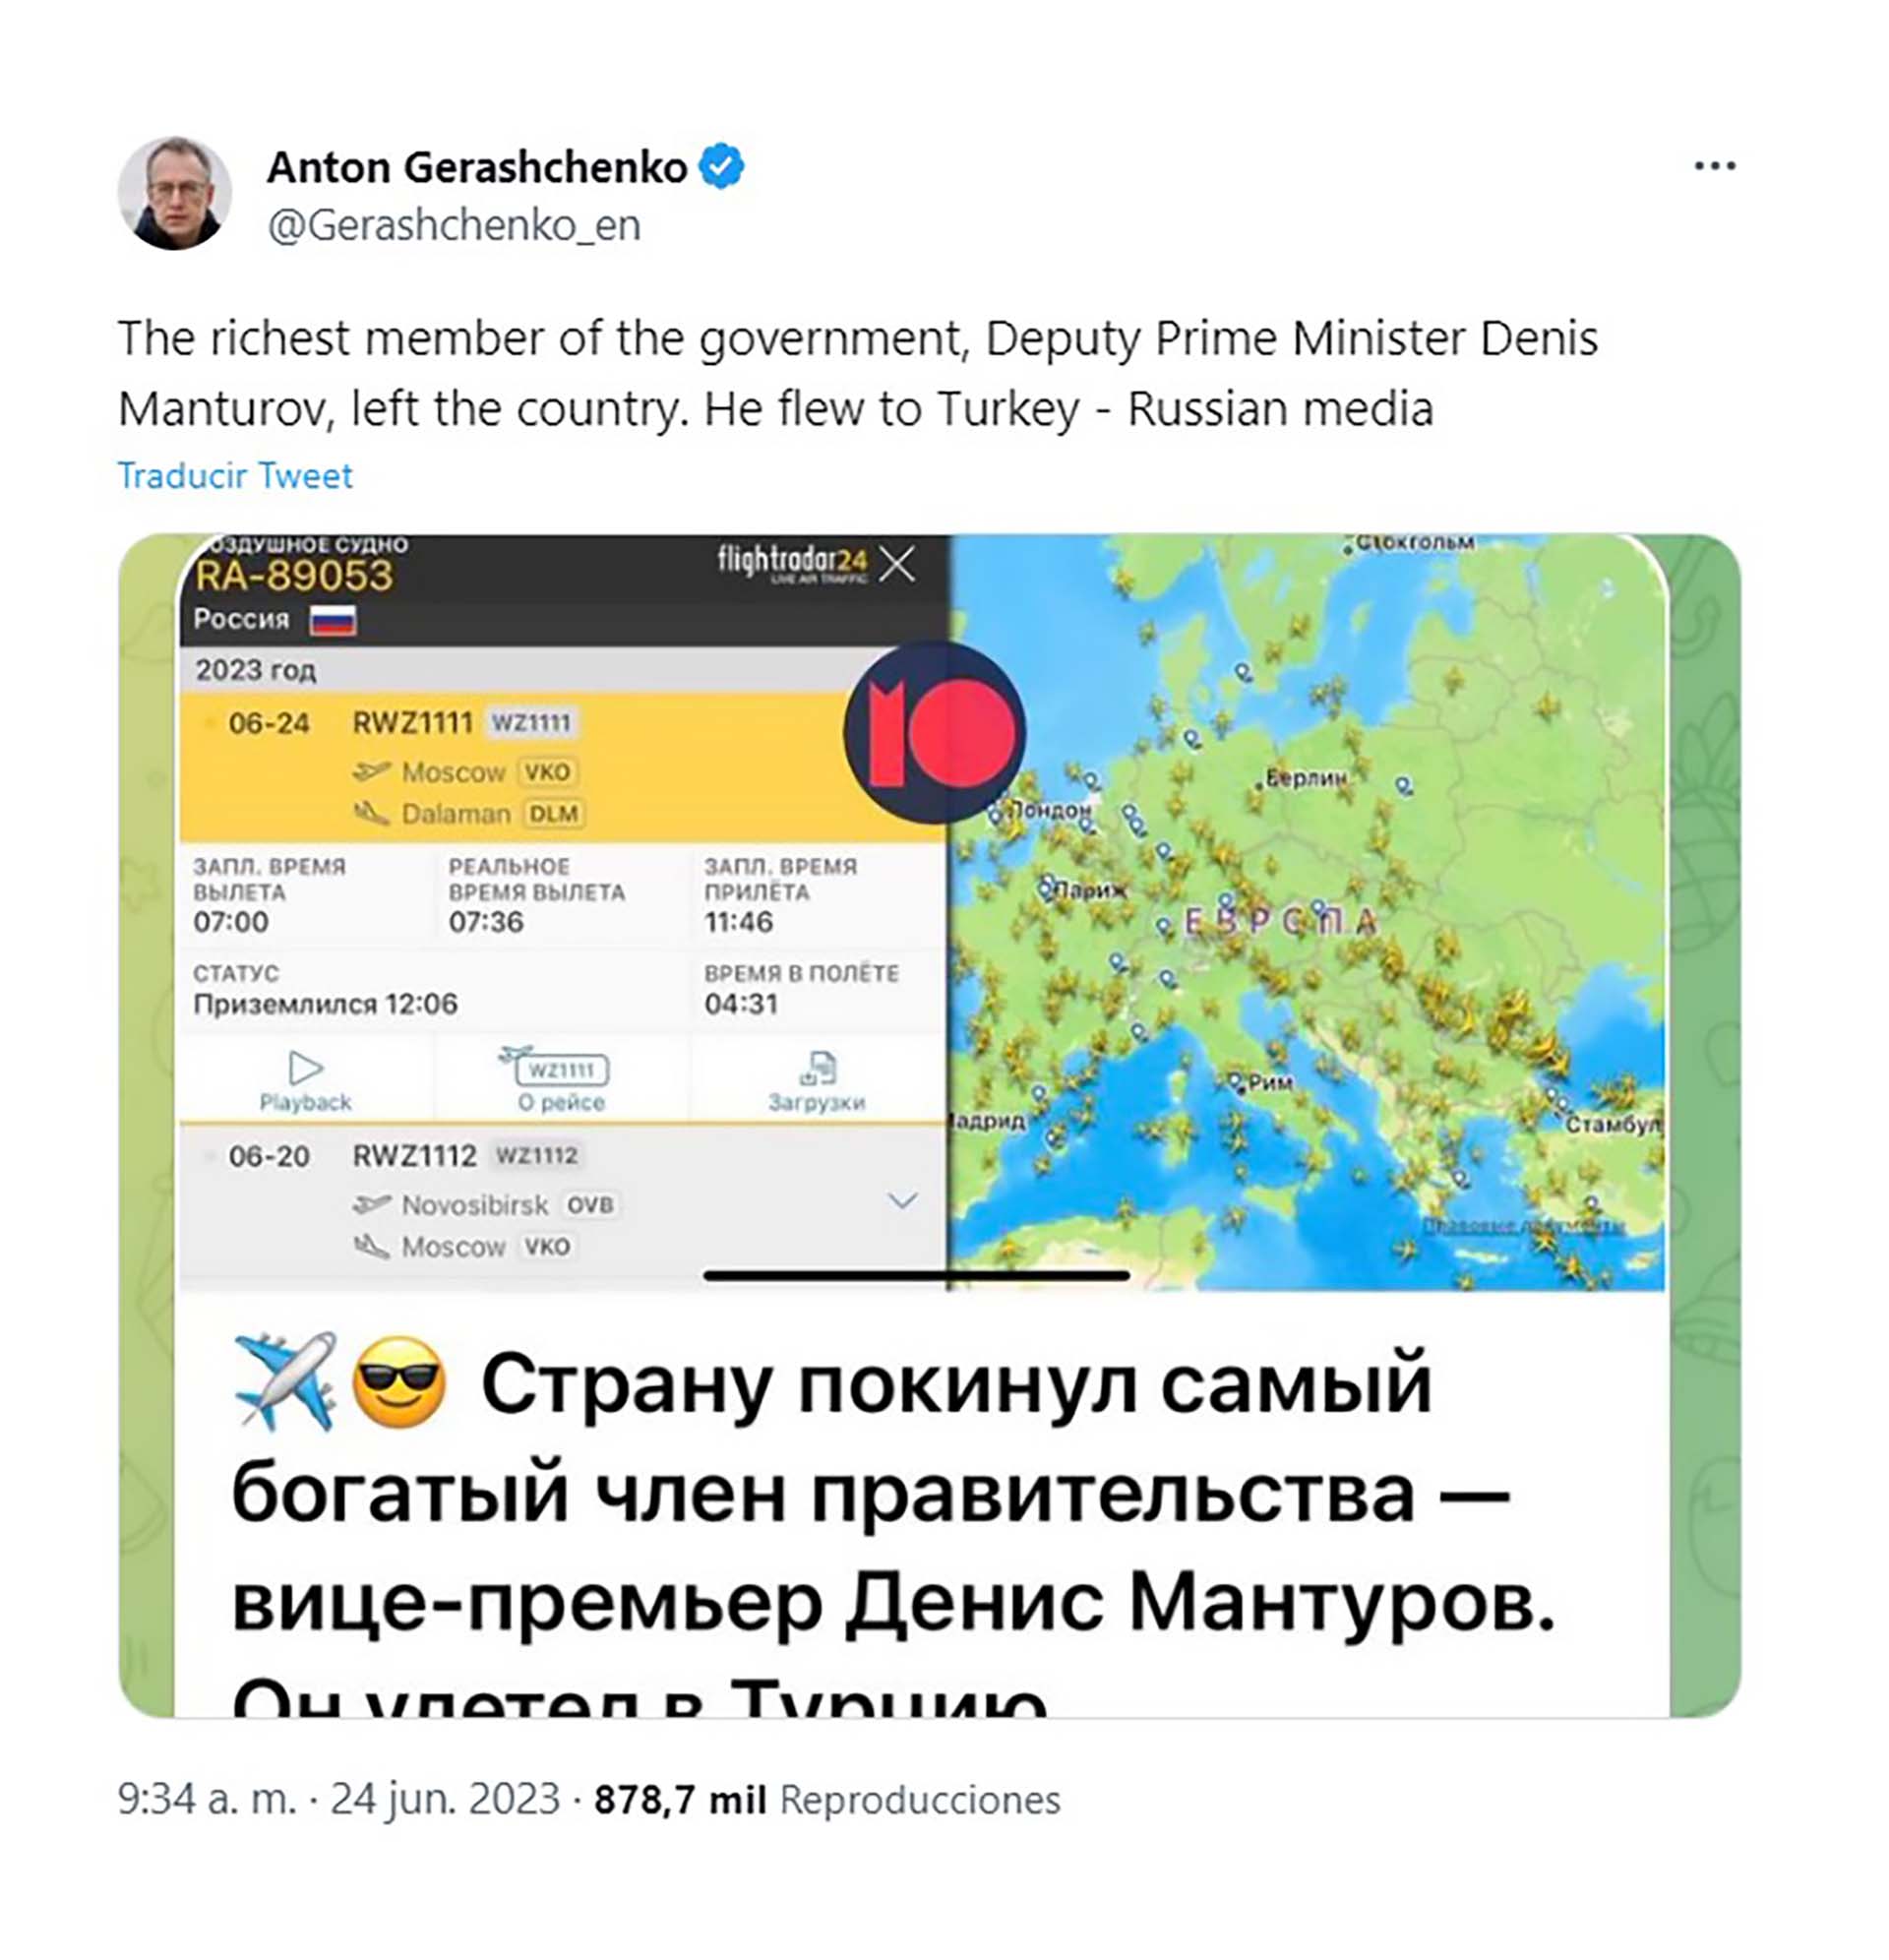 Anton Gerashchenko, asesor del Ministro del Interior de Ucrania, denunció el Twitter el vuelo de Manturov